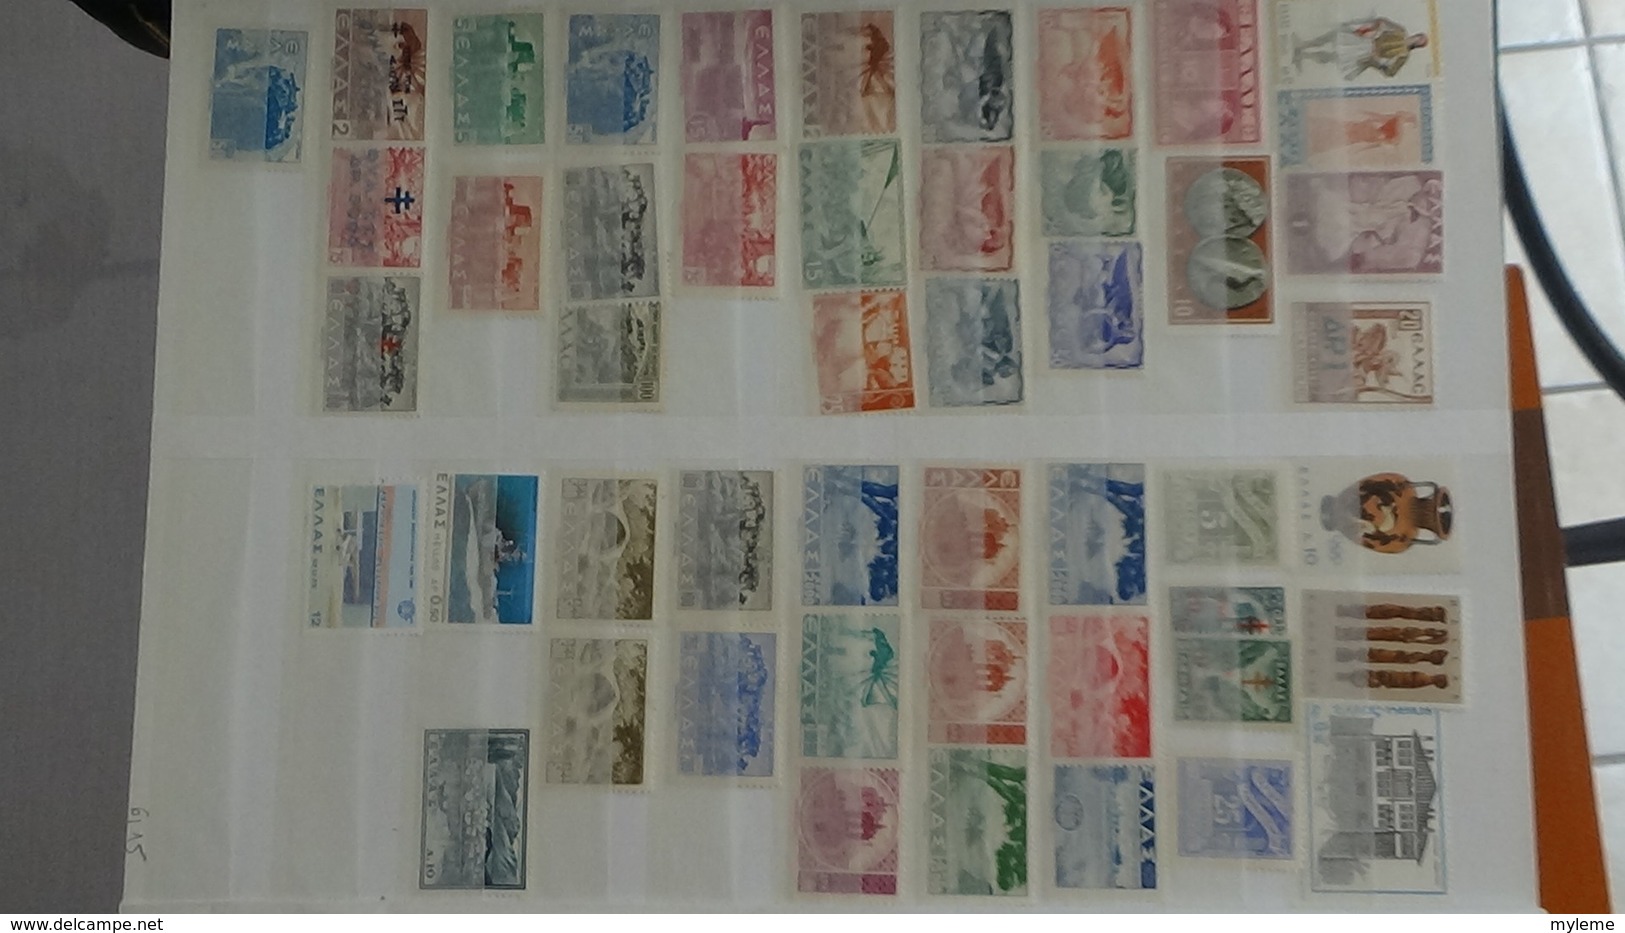 D46 Collection de timbres ** et * de différents paus. Majorité **. A saisir !!!